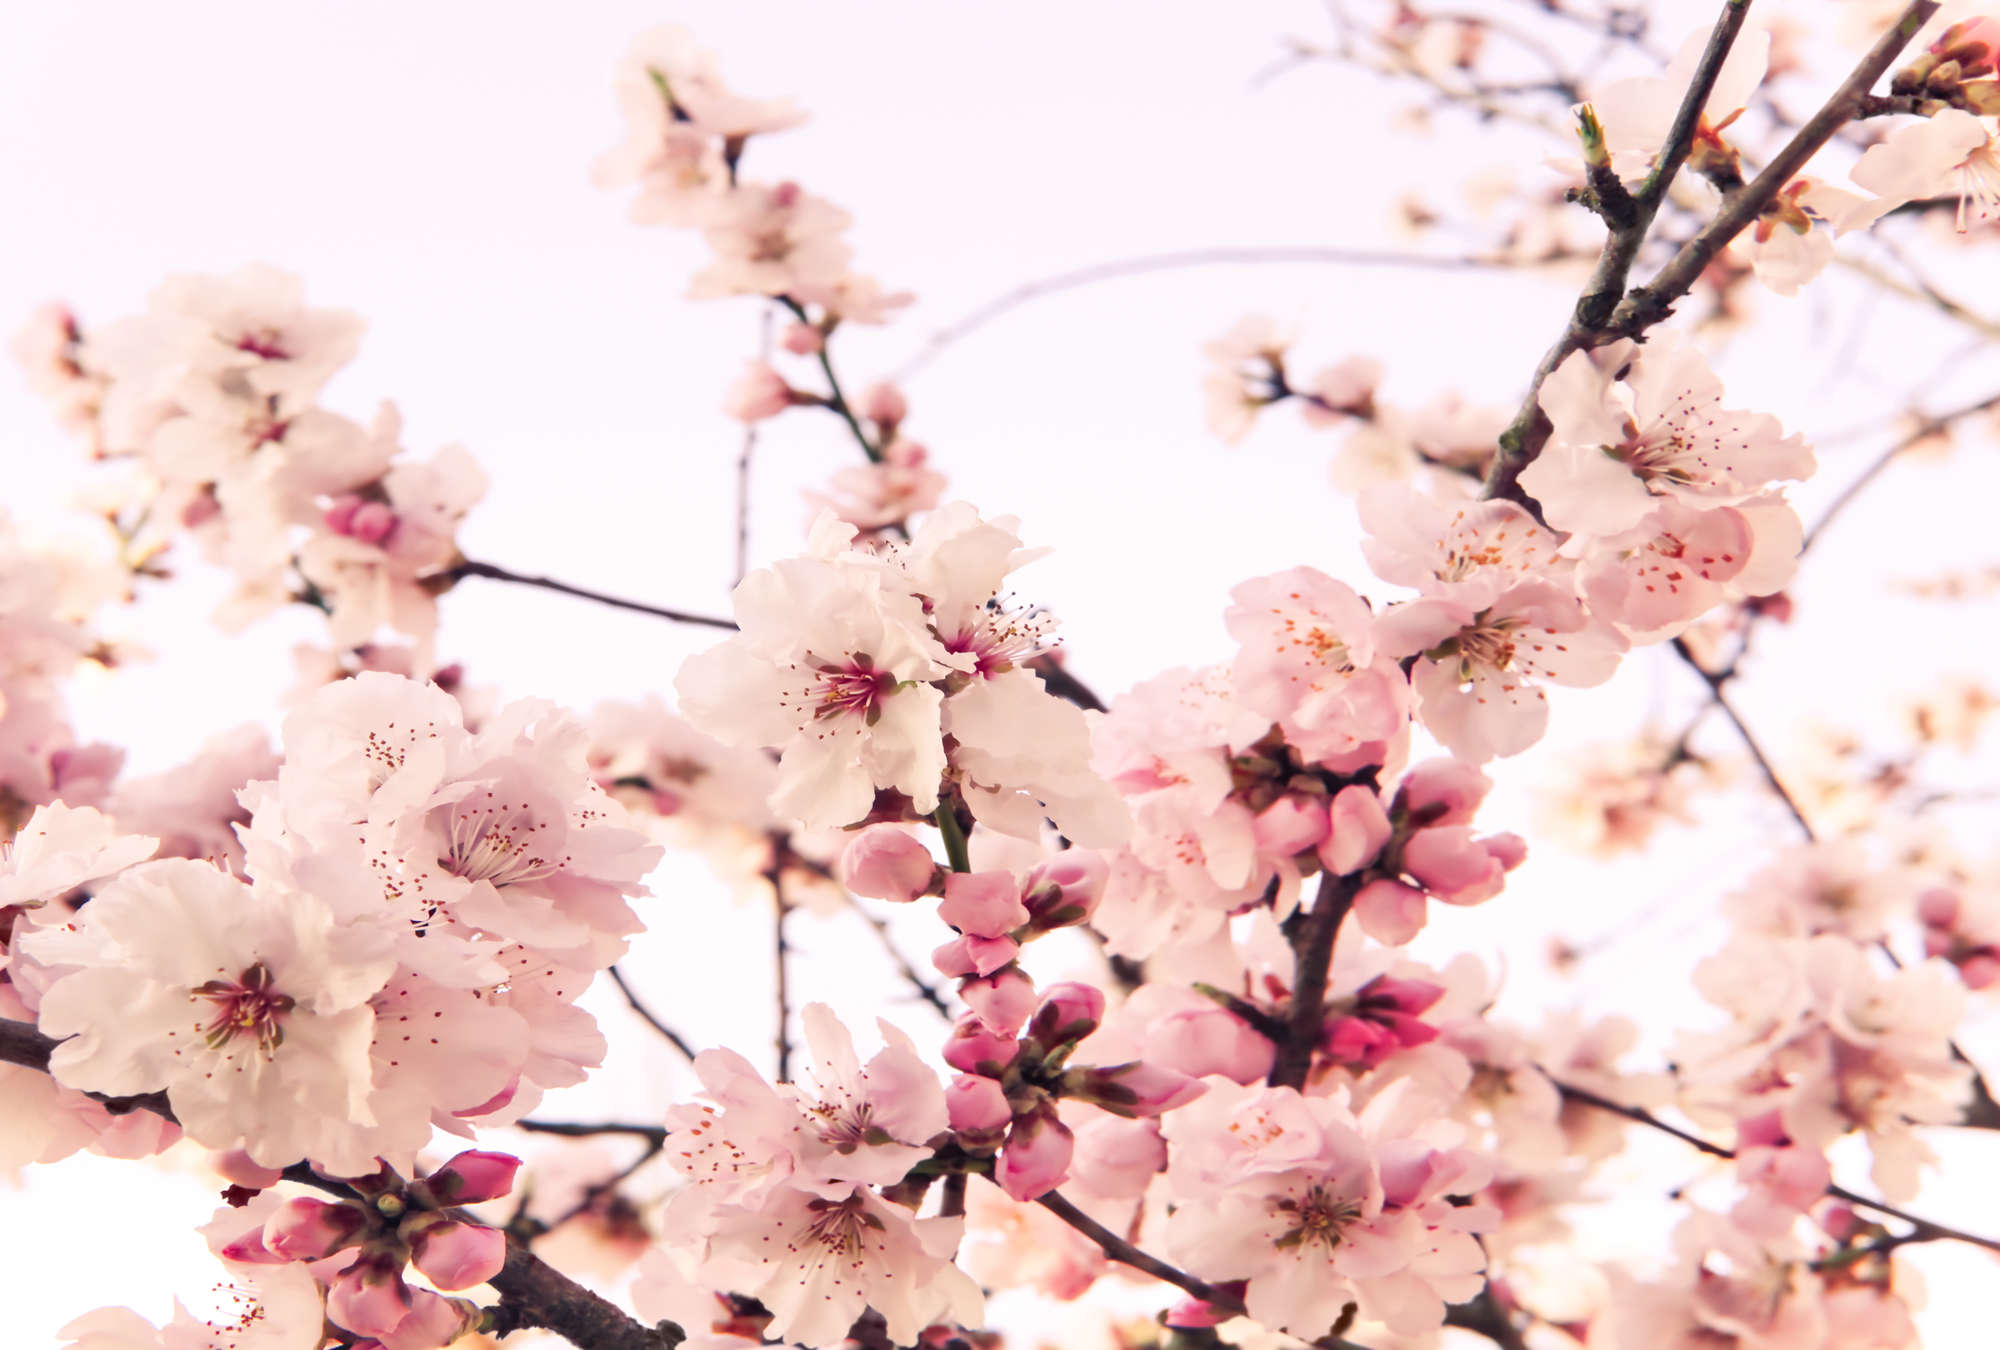             Papel pintado fotográfico de plantas en flor de cerezo sobre vellón liso nacarado
        